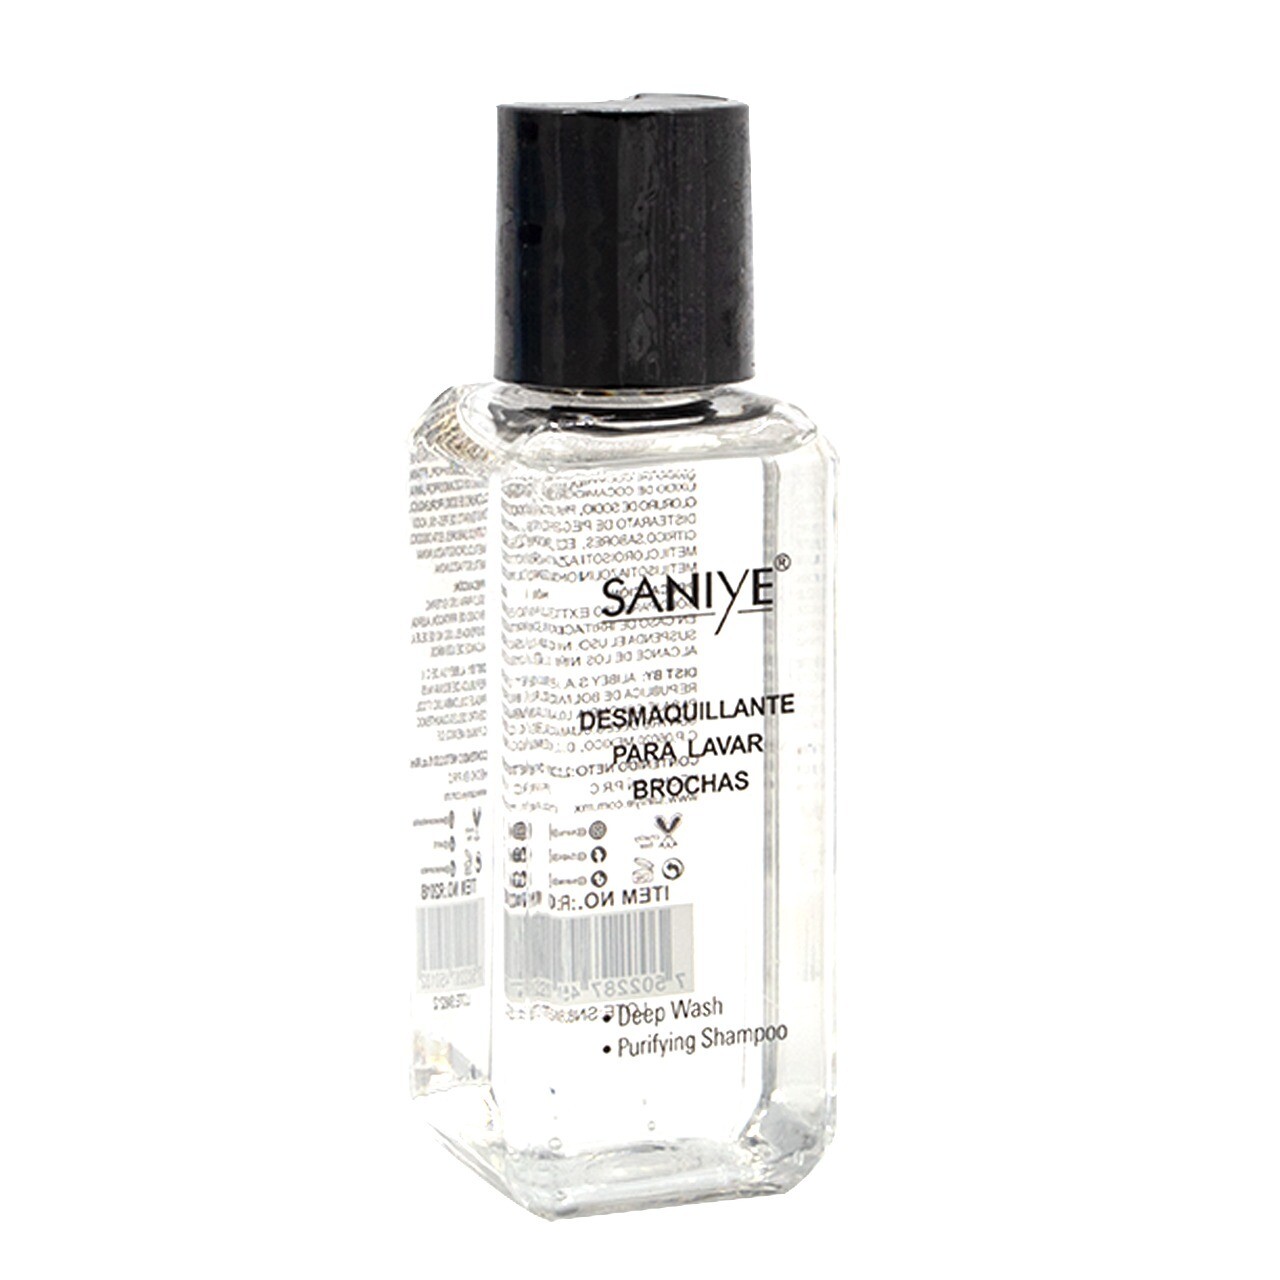 🌸Limpiador Desinfectante de Brochas Saniye 🌸 💖Limpia tus brochas para un  acabado uniforme, liso y rostro saludable. 💖Evita el almacen de producto  que